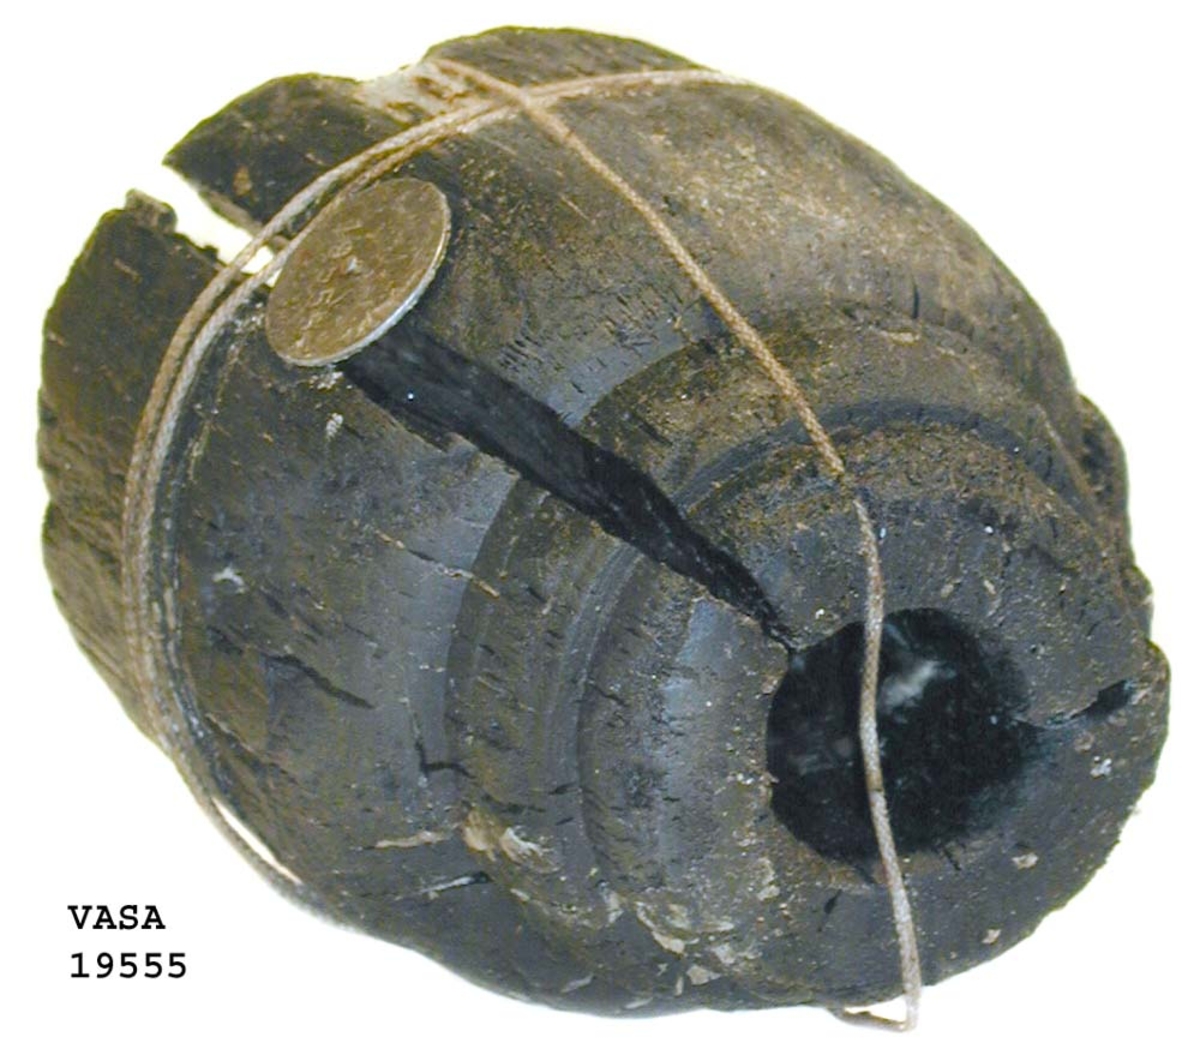 Kraftigt eroderad kolv till ansättare. Kolven består av ett cylindriskt svarvat trästycke med ett centrumhål för skaftet. I kolvens övre ände, mot skaftet till, är kolven profilsvarvad. Föremålet är brutet i två delar vilka hålls samman med snöre.